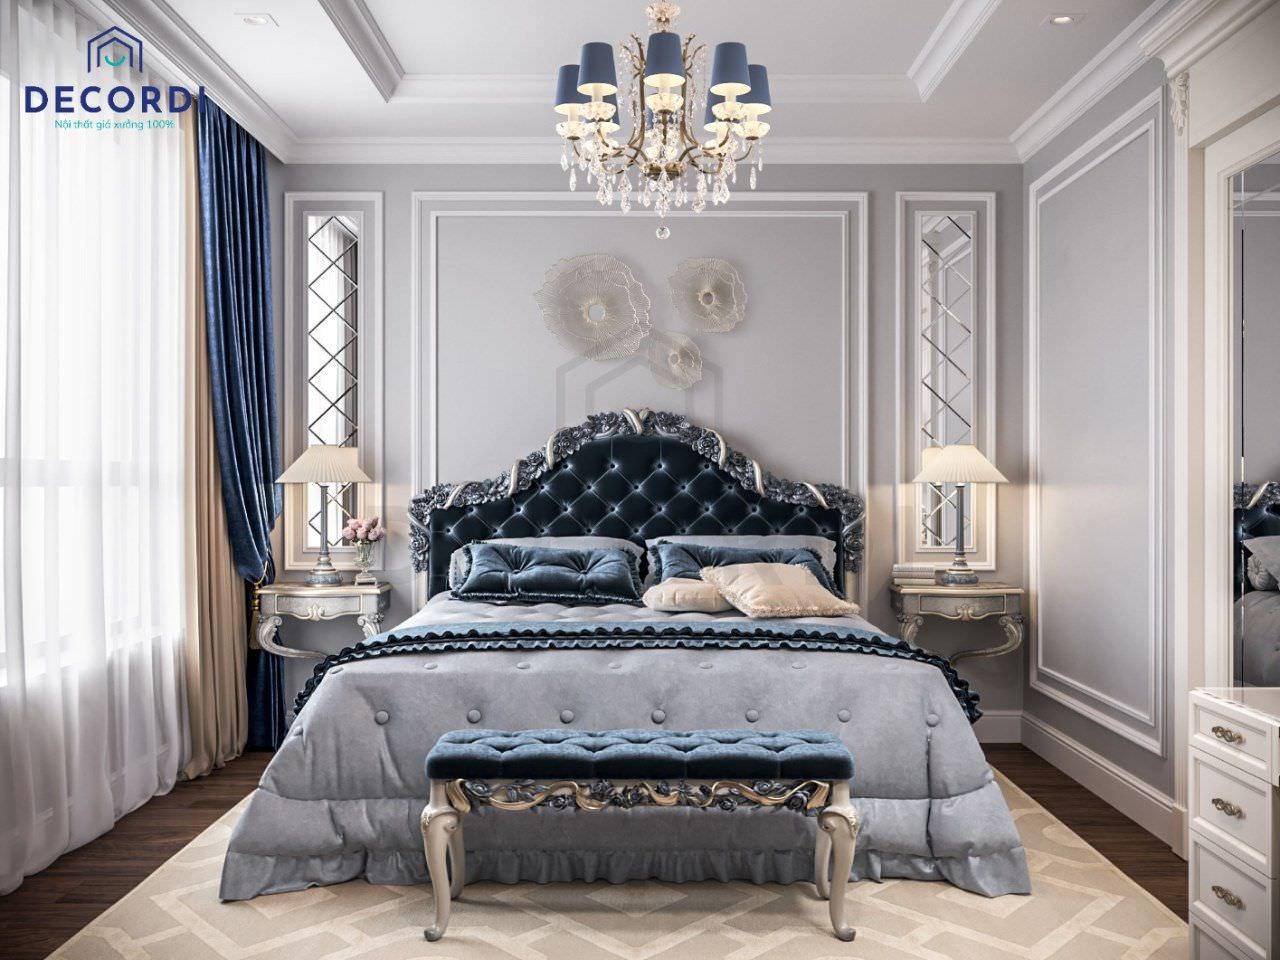 Thiết kế phòng ngủ lãng mạn với tông màu xanh lam phối trắng kết hợp cùng các đường phào chỉ theo phong cách bán cổ điển